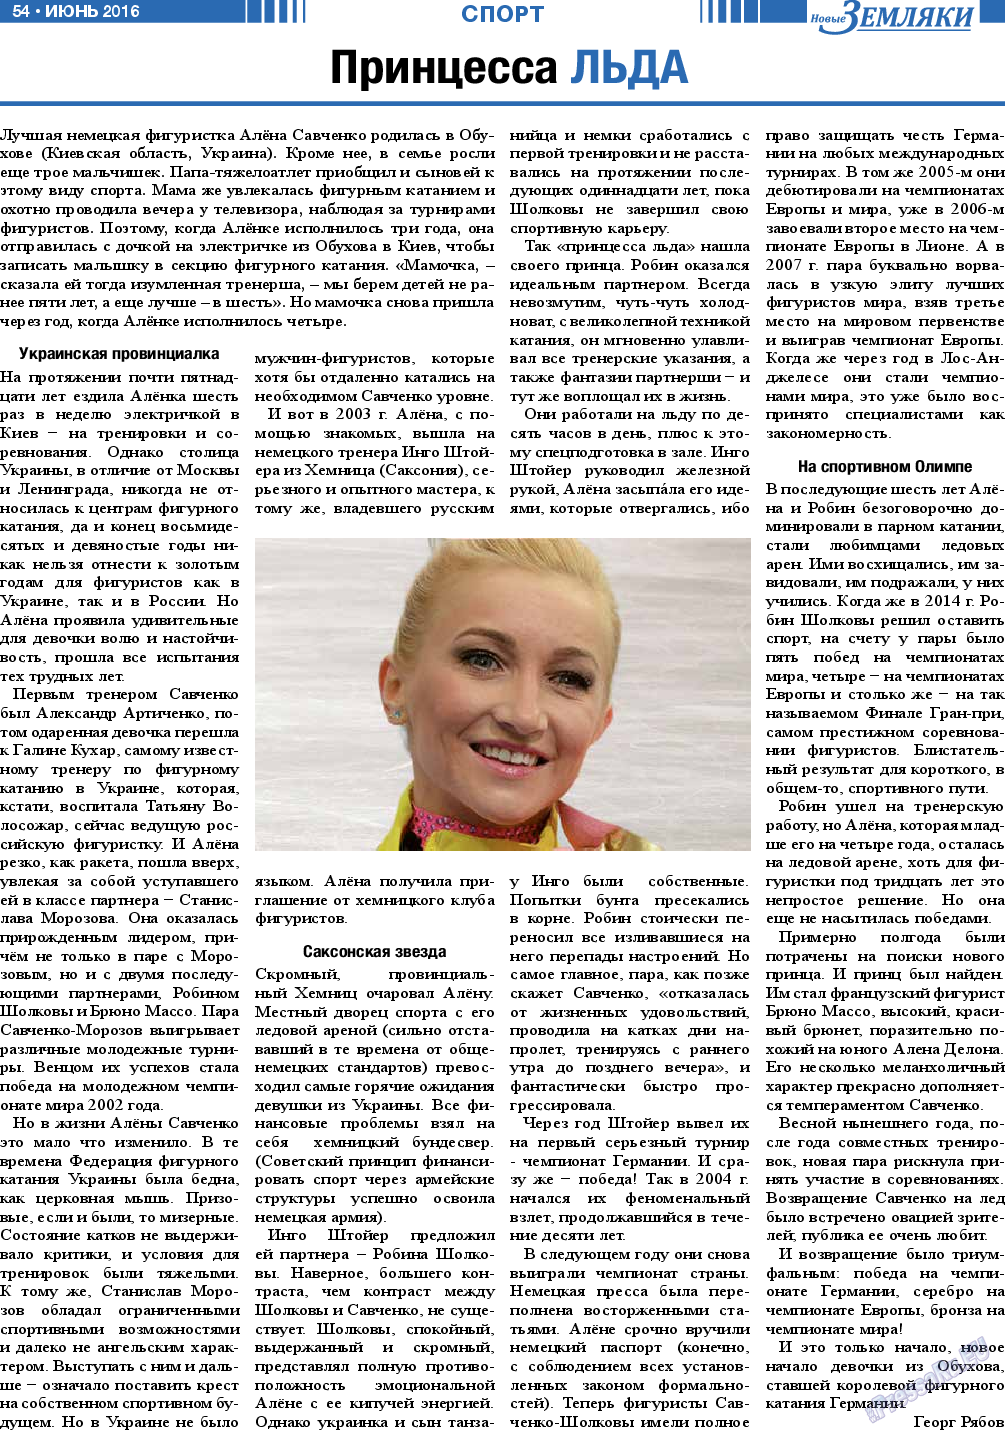 Новые Земляки, газета. 2016 №6 стр.54